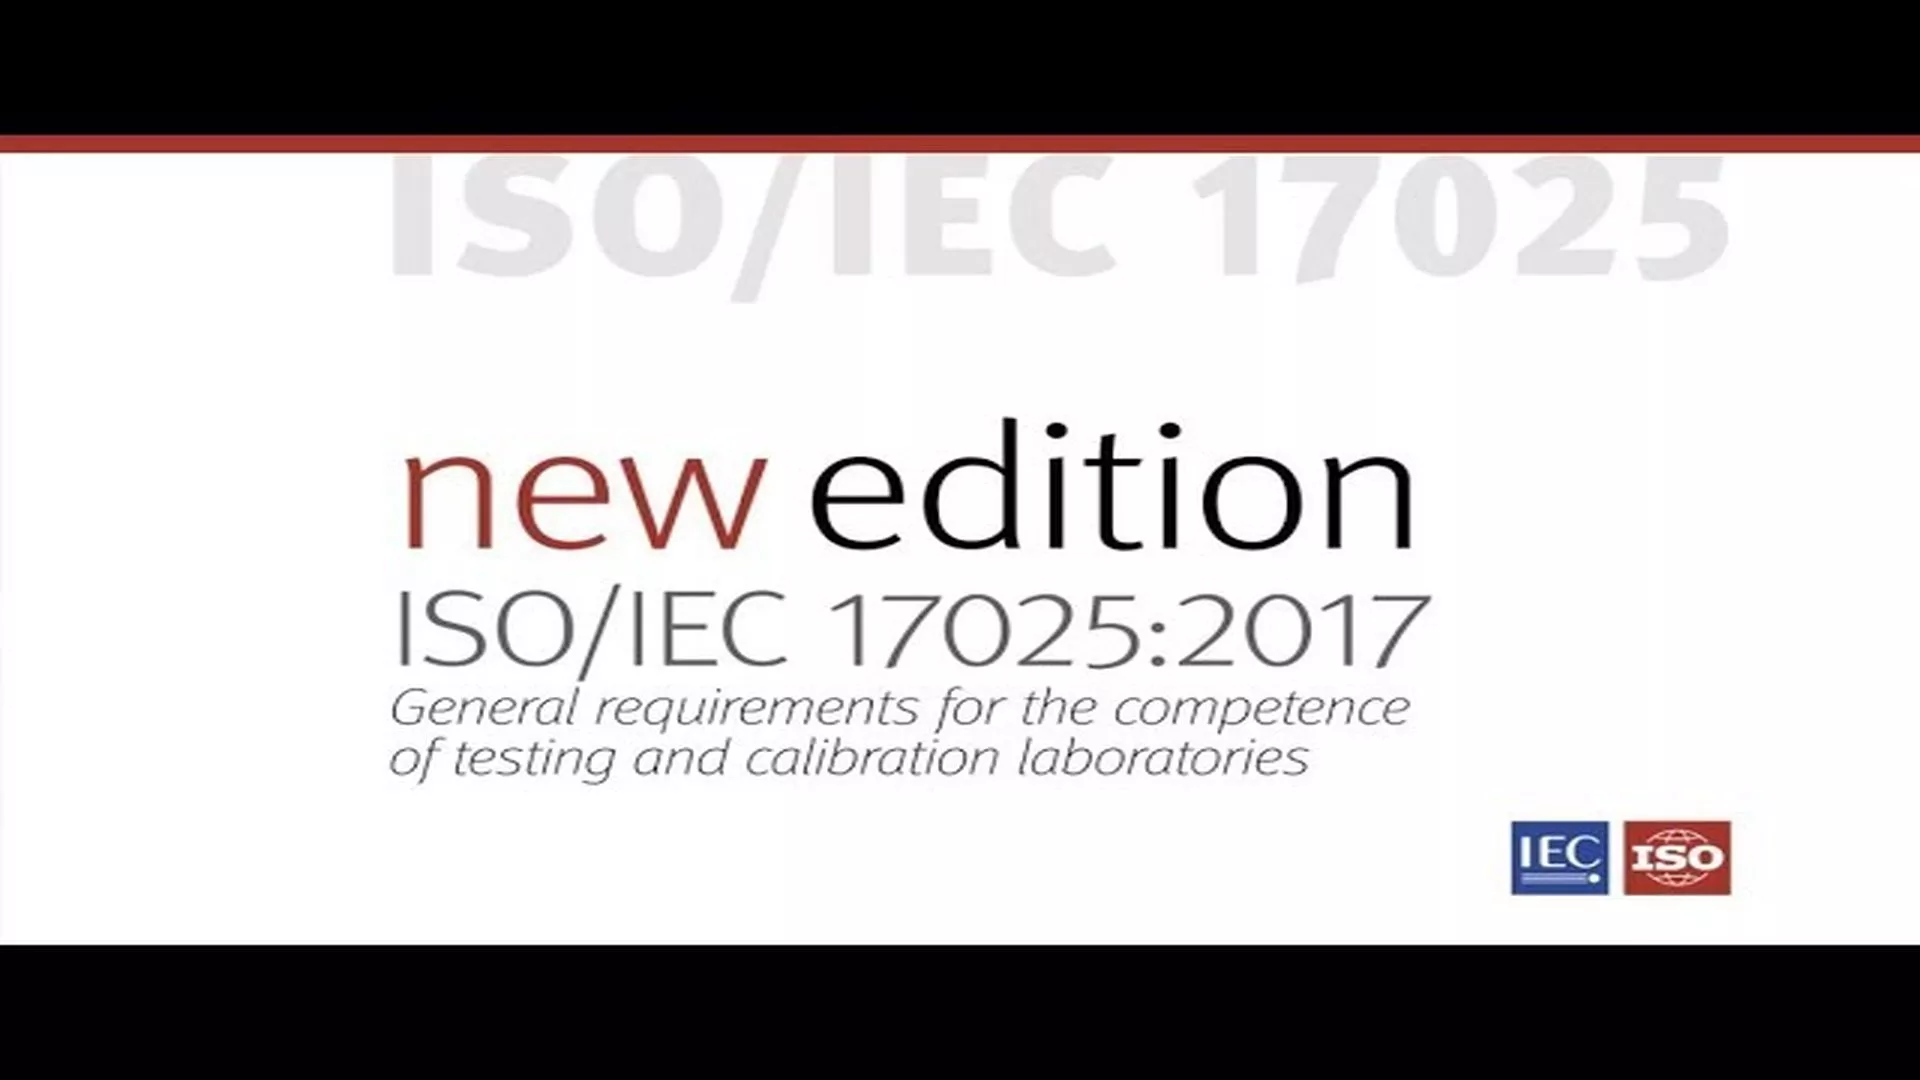 Descubre la ISO/IEC 17025 | Norma para laboratorios de ensayo y calibración